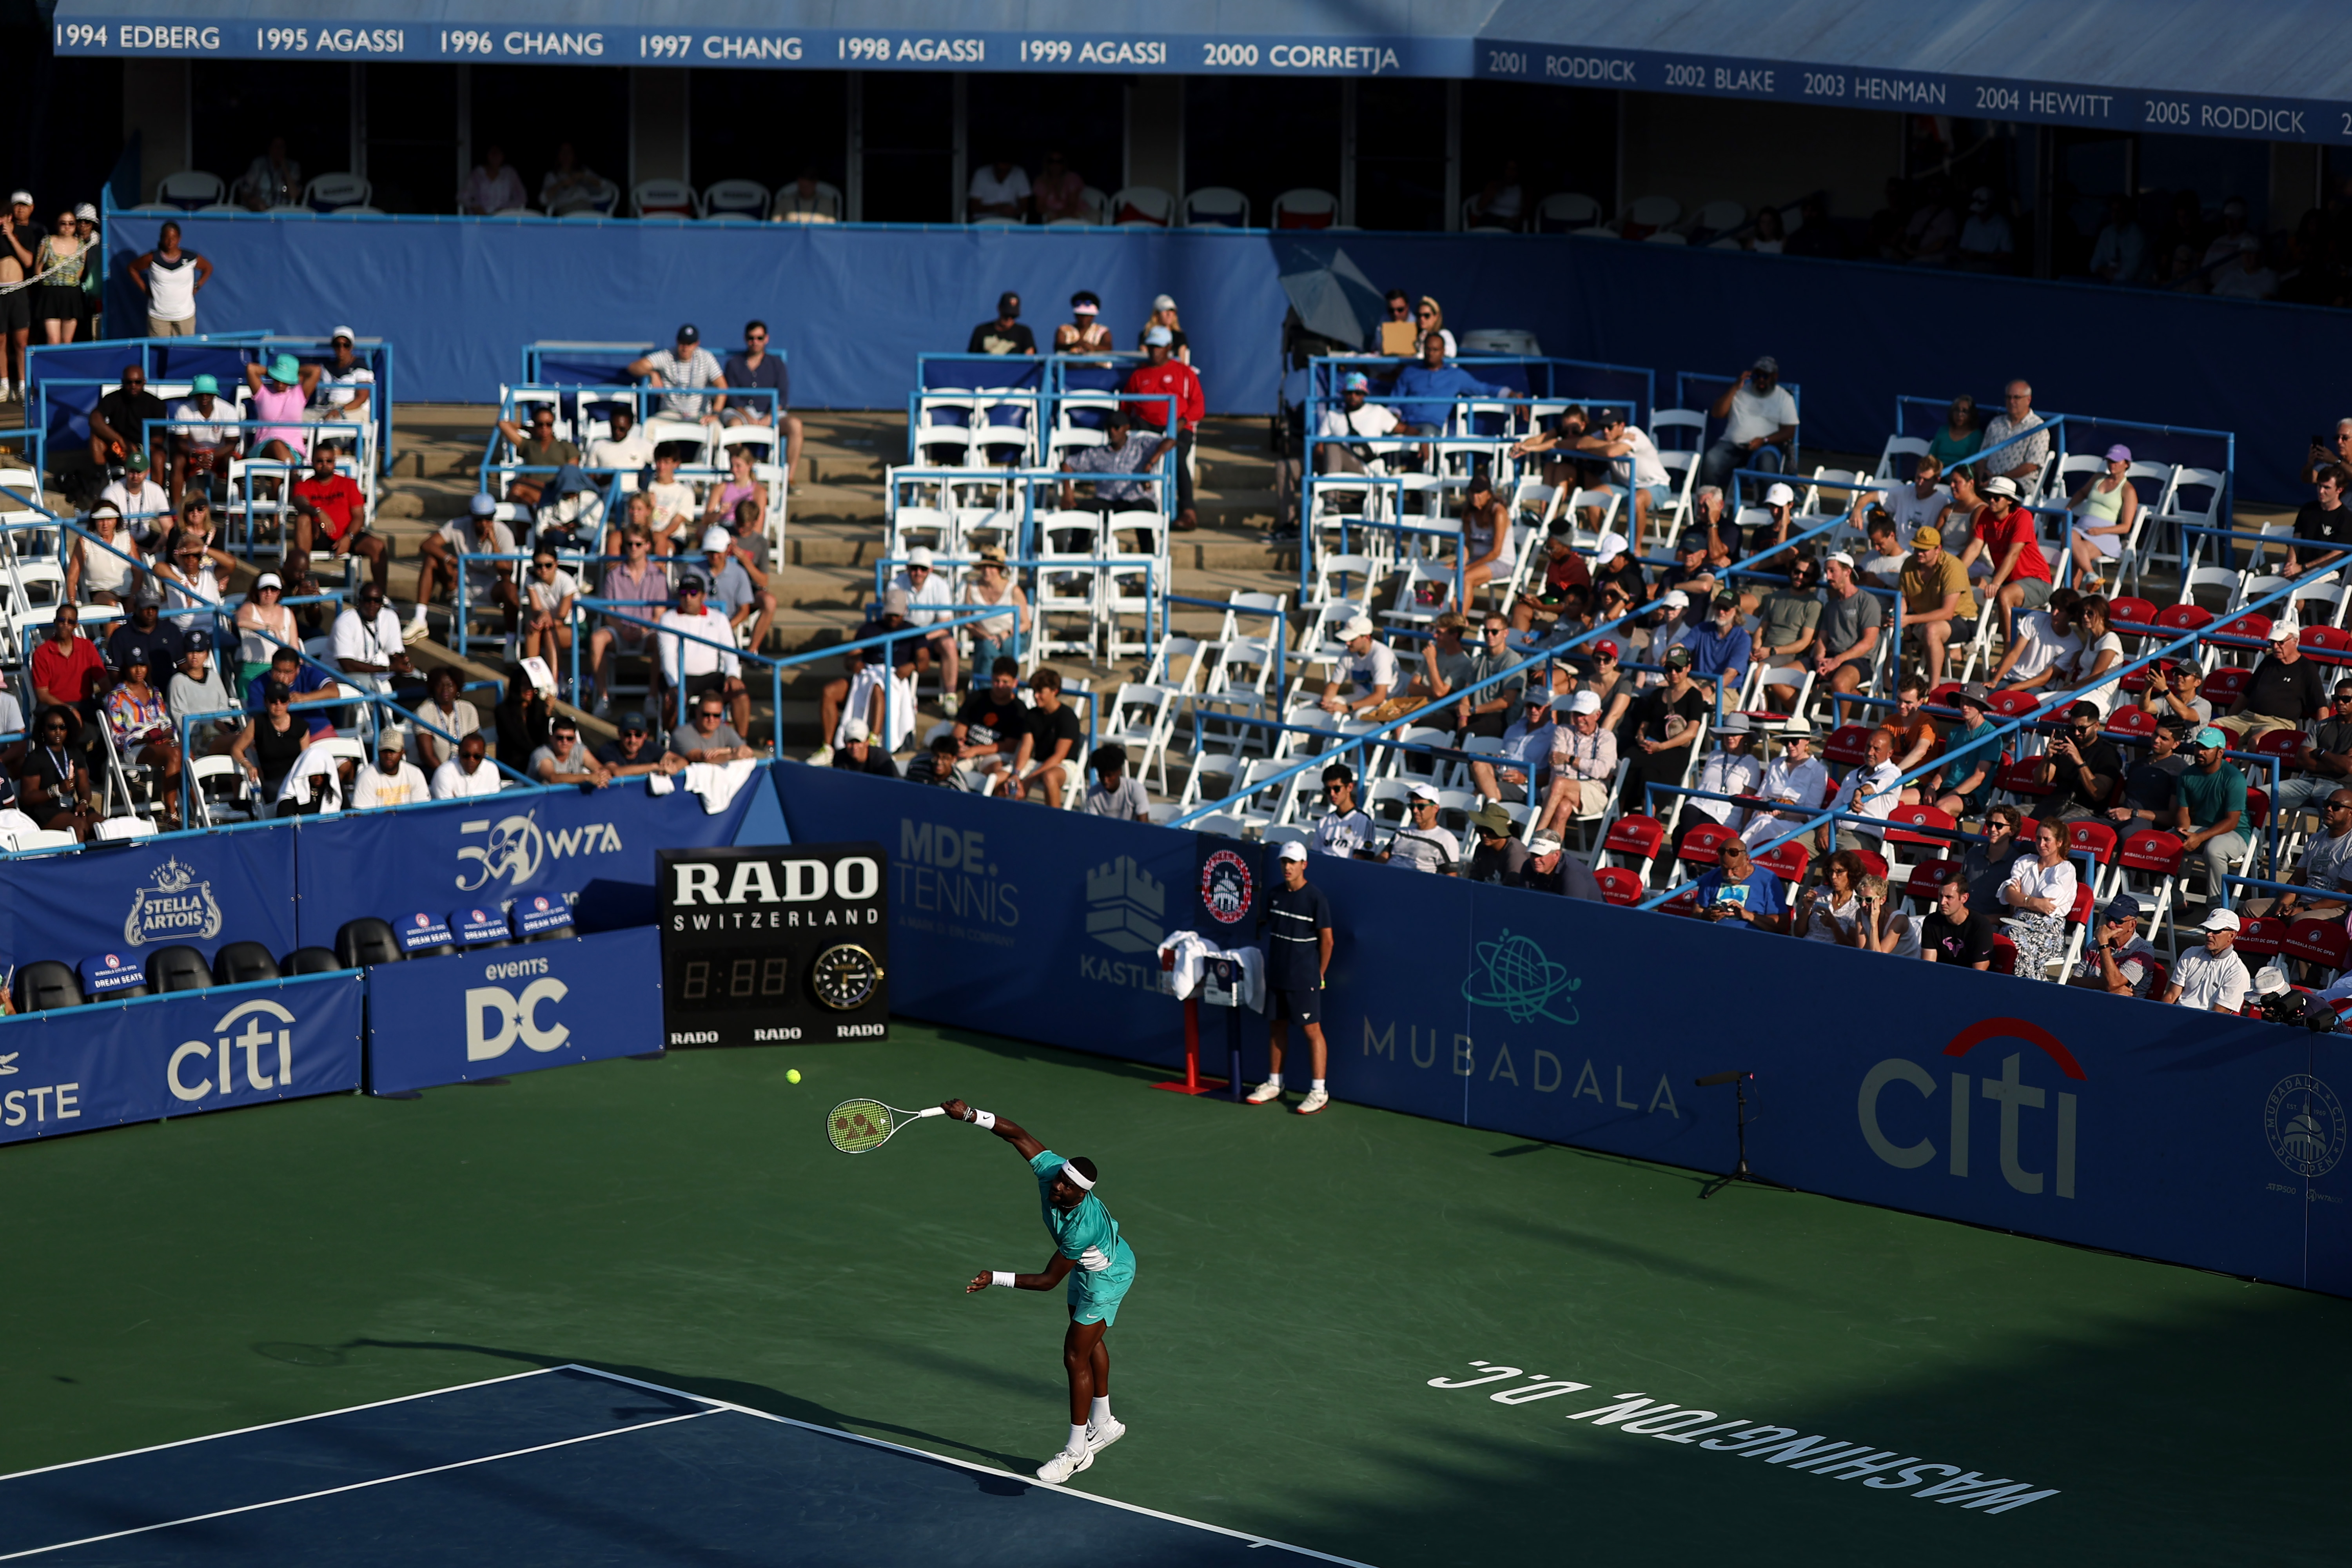 Mubadala Citi DC Open brings top-tier tennis to Rock Creek Park